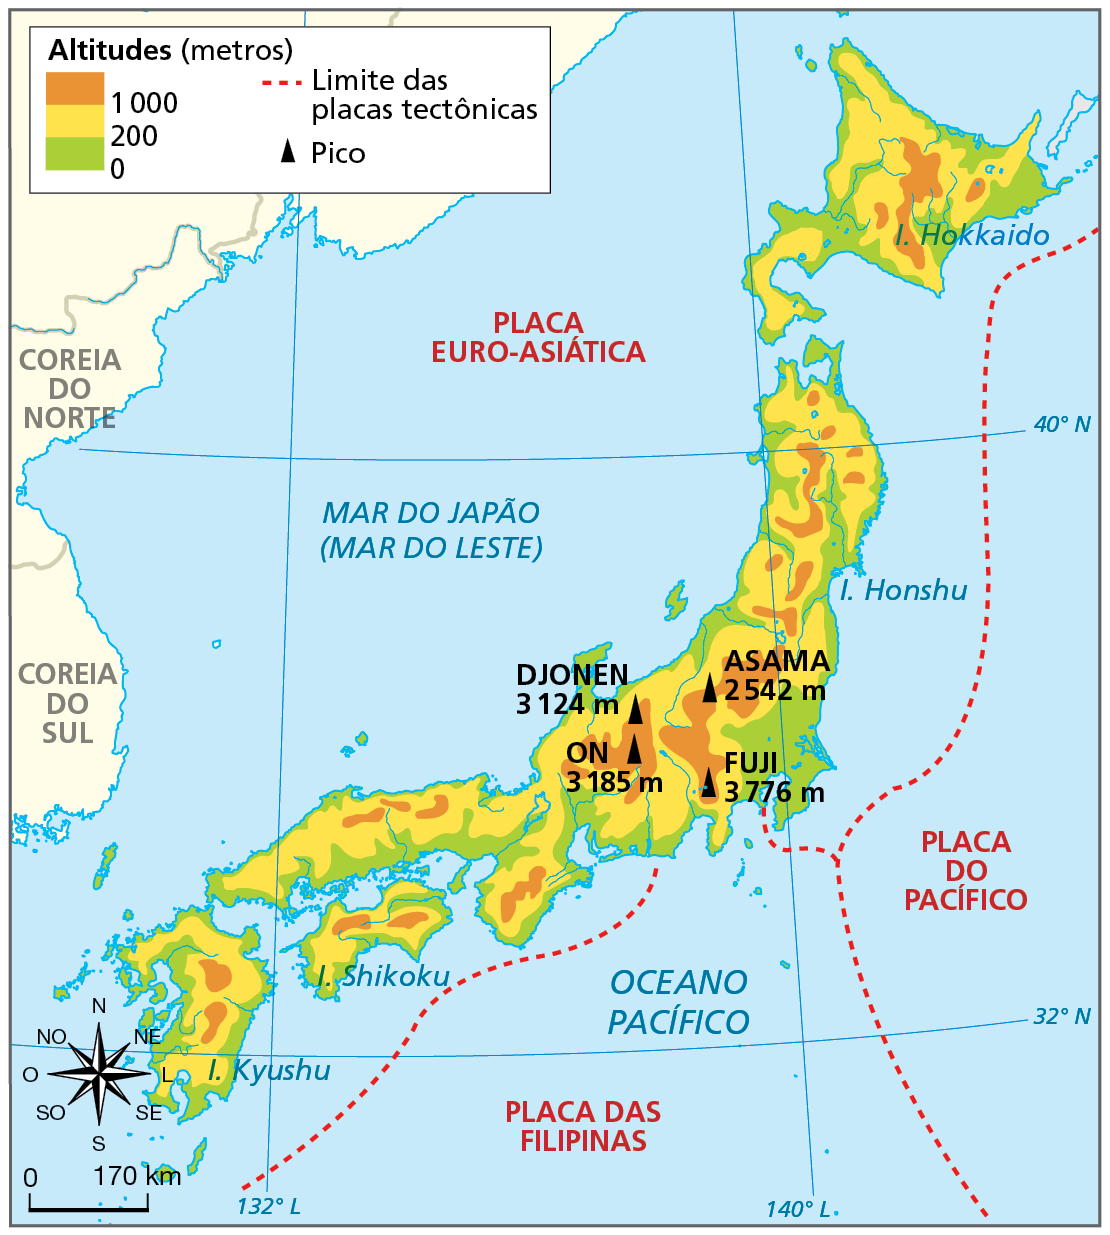 Mapa. Japão: relevo e placas tectônicas. Mapa do território japonês com as altitudes do relevo evidenciadas por cores. Além disso, constam os picos mais altos com suas alturas, representados por meio do elemento gráfico de um triângulo, e os limites entre as placas tectônicas, representados por uma linha vermelha tracejada. 
Altitudes de 0 a 200 metros (cor verde): áreas litorâneas das ilhas de Kyushu, Shikoku, Honsh e Hokkaido. 
Altitudes 200 a 1.000 metros (cor amarela): áreas centrais das quatro ilhas.
Altitudes acima de 1.000 metros (cor laranja): áreas centrais das quatro ilhas.
Os picos mais elevados estão localizados na faixa central da Ilha de Honshu: Pico Djonen, 1.124 metros; Pico Asama, 2.542 metros; Pico On, 3.185 metros; Monte Fuji, 3.776 metros. 
Limites de placas tectônicas: o território do Japão está localizado entre a borda leste da Placa Euro-Asiática, a borda norte da Placa das Filipinas e a borda oeste da Placa do Pacífico, justamente na zona de convergência entre essas três placas tectônicas.  
Abaixo, rosa dos ventos e escala de 0 a 170 quilômetros.